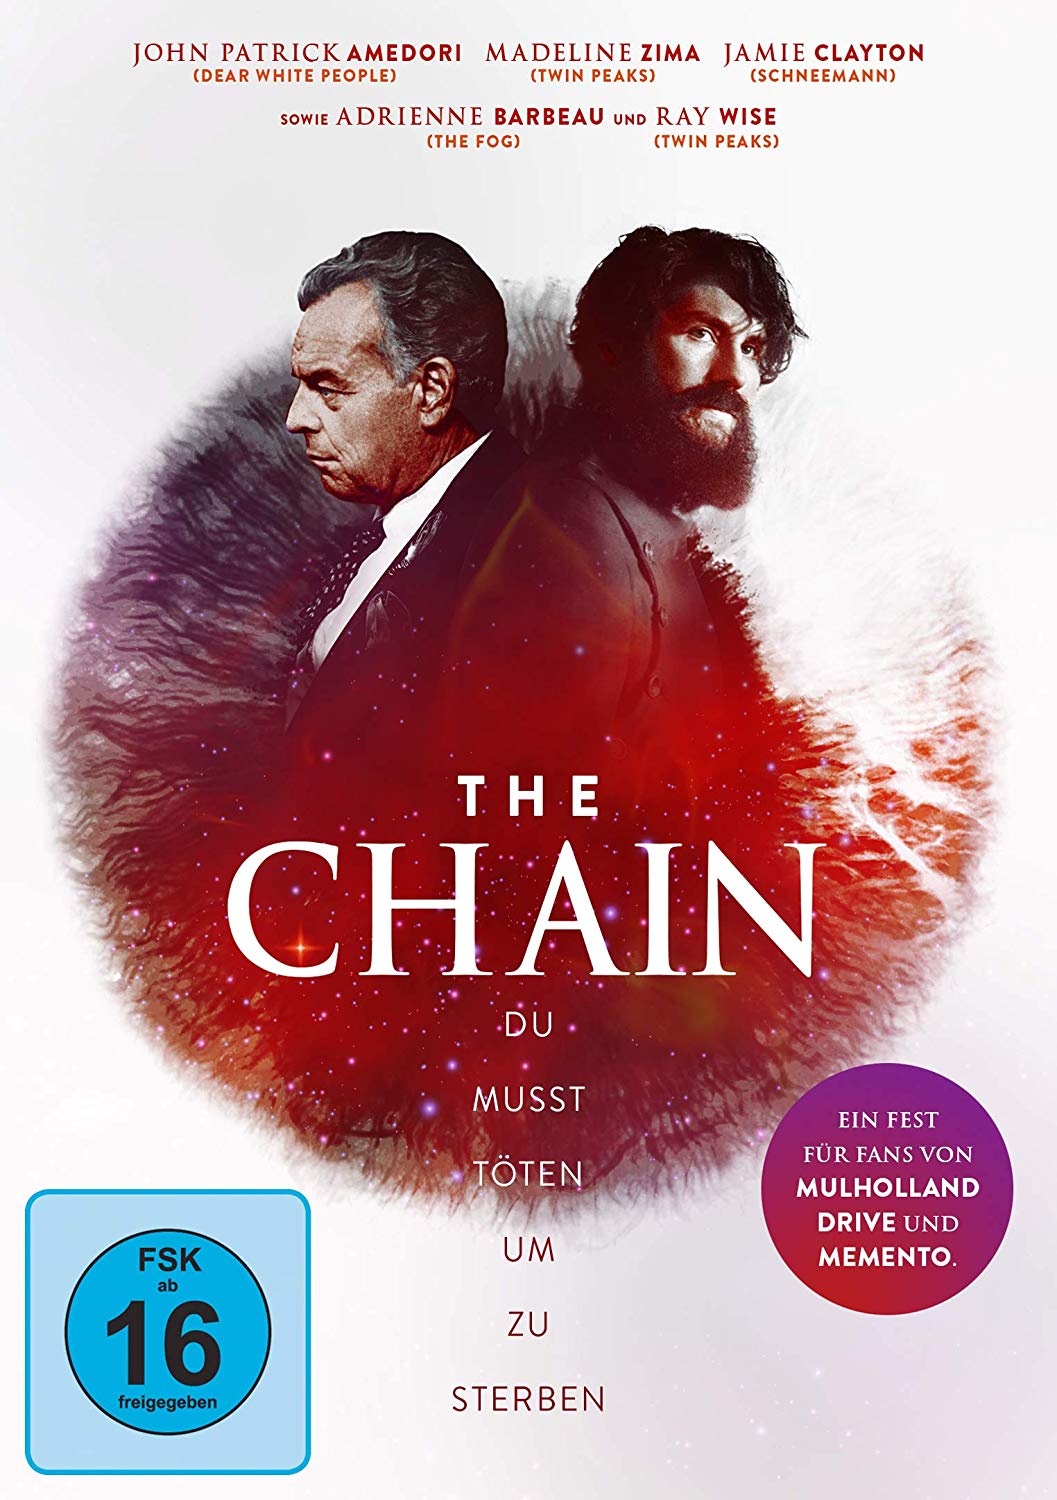 The Chain Du musst Töten um zu Sterben Film 2018